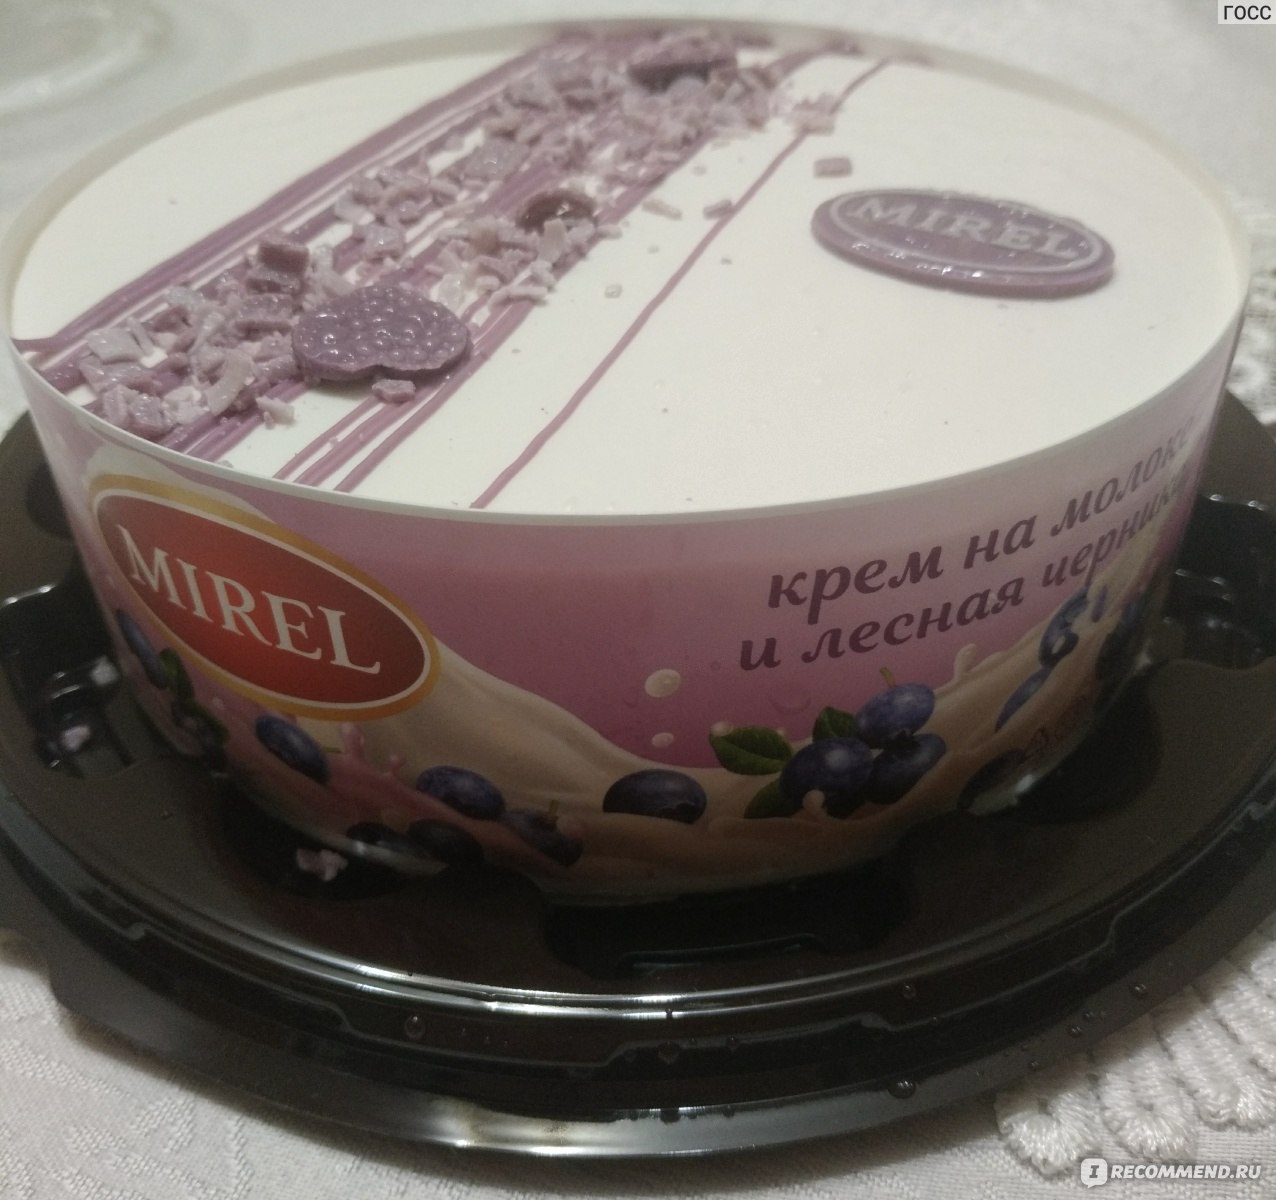 Торт Мирель черничное молоко